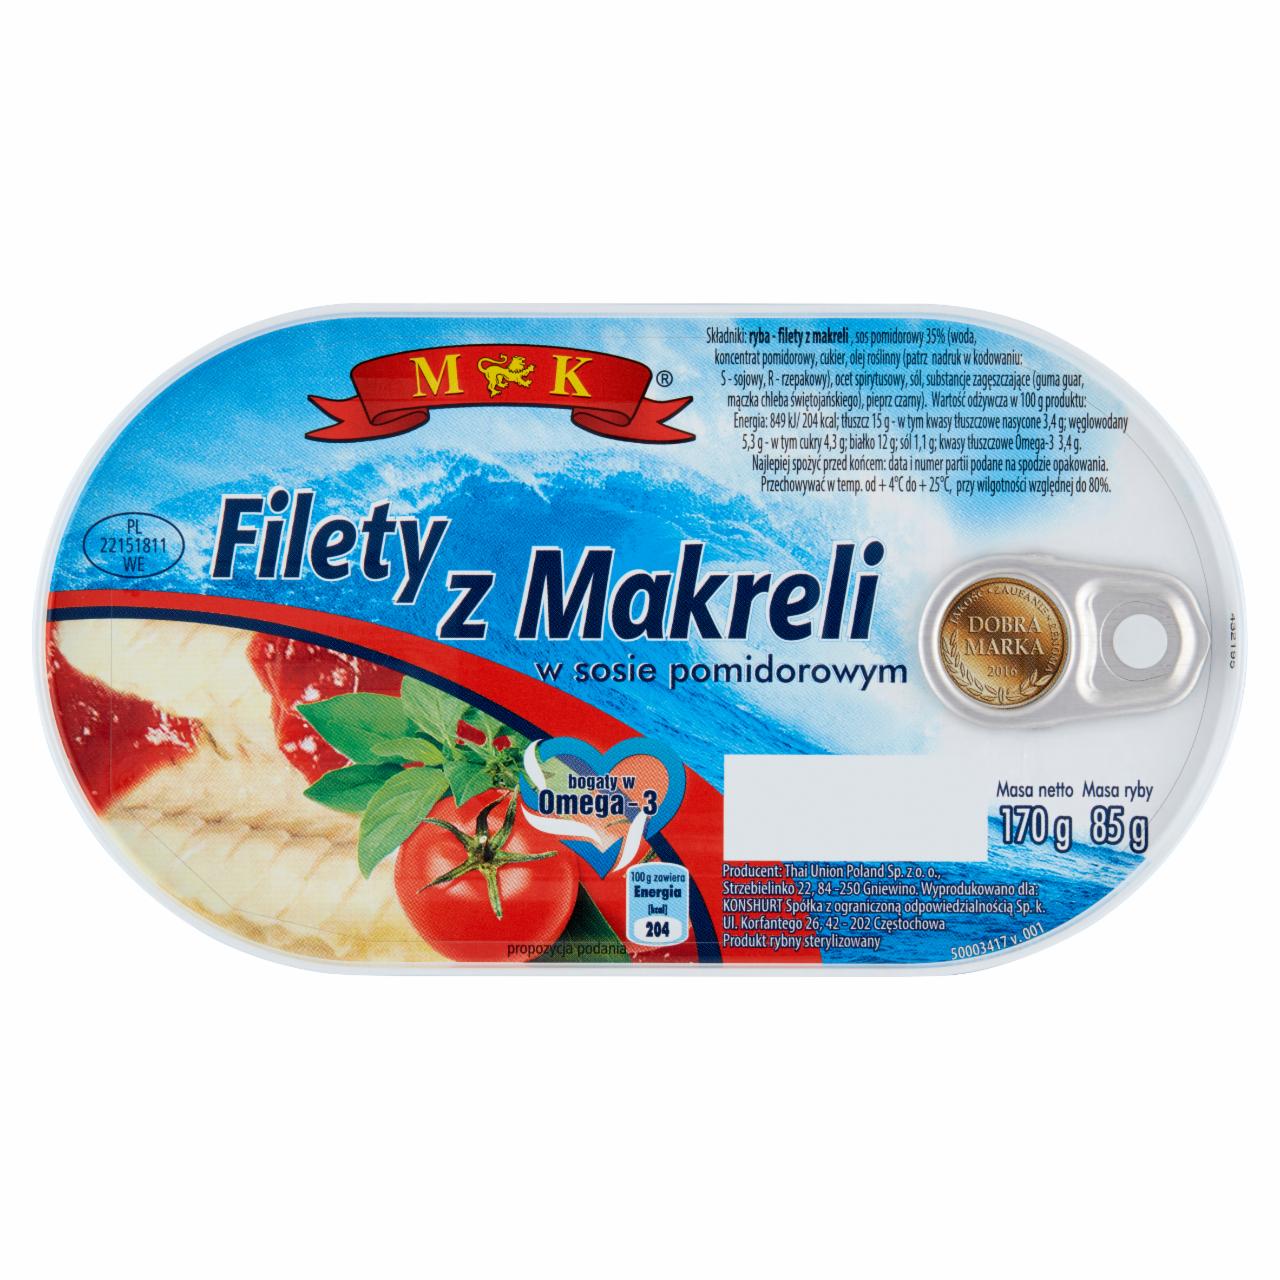 Zdjęcia - MK Filety z makreli w sosie pomidorowym 170 g